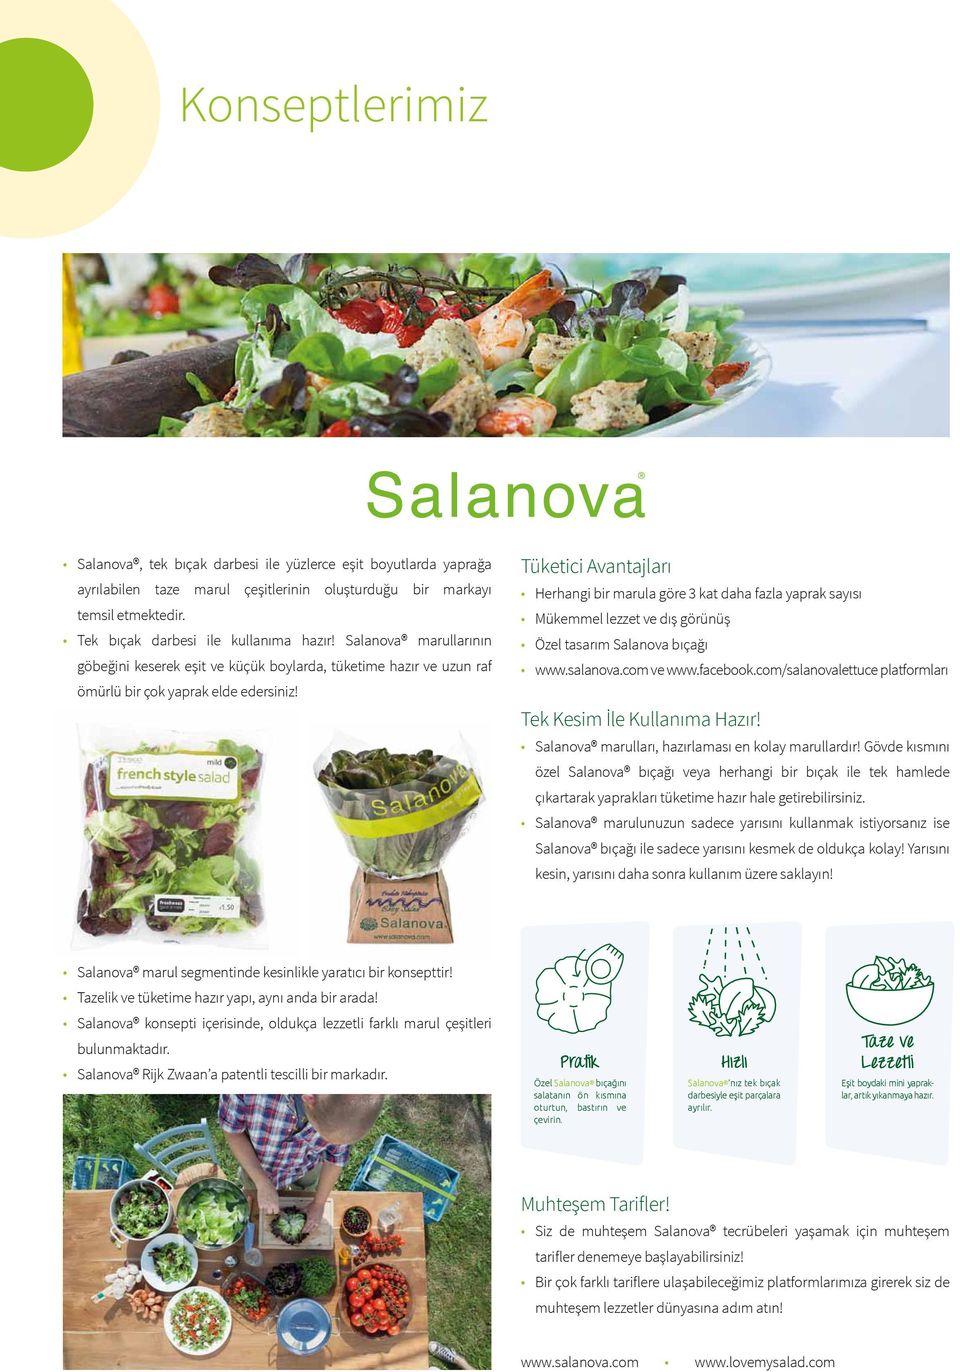 Tüketici Avantajları Herhangi bir marula göre 3 kat daha fazla yaprak sayısı Mükemmel lezzet ve dış görünüş Özel tasarım Salanova bıçağı www.salanova.com ve www.facebook.